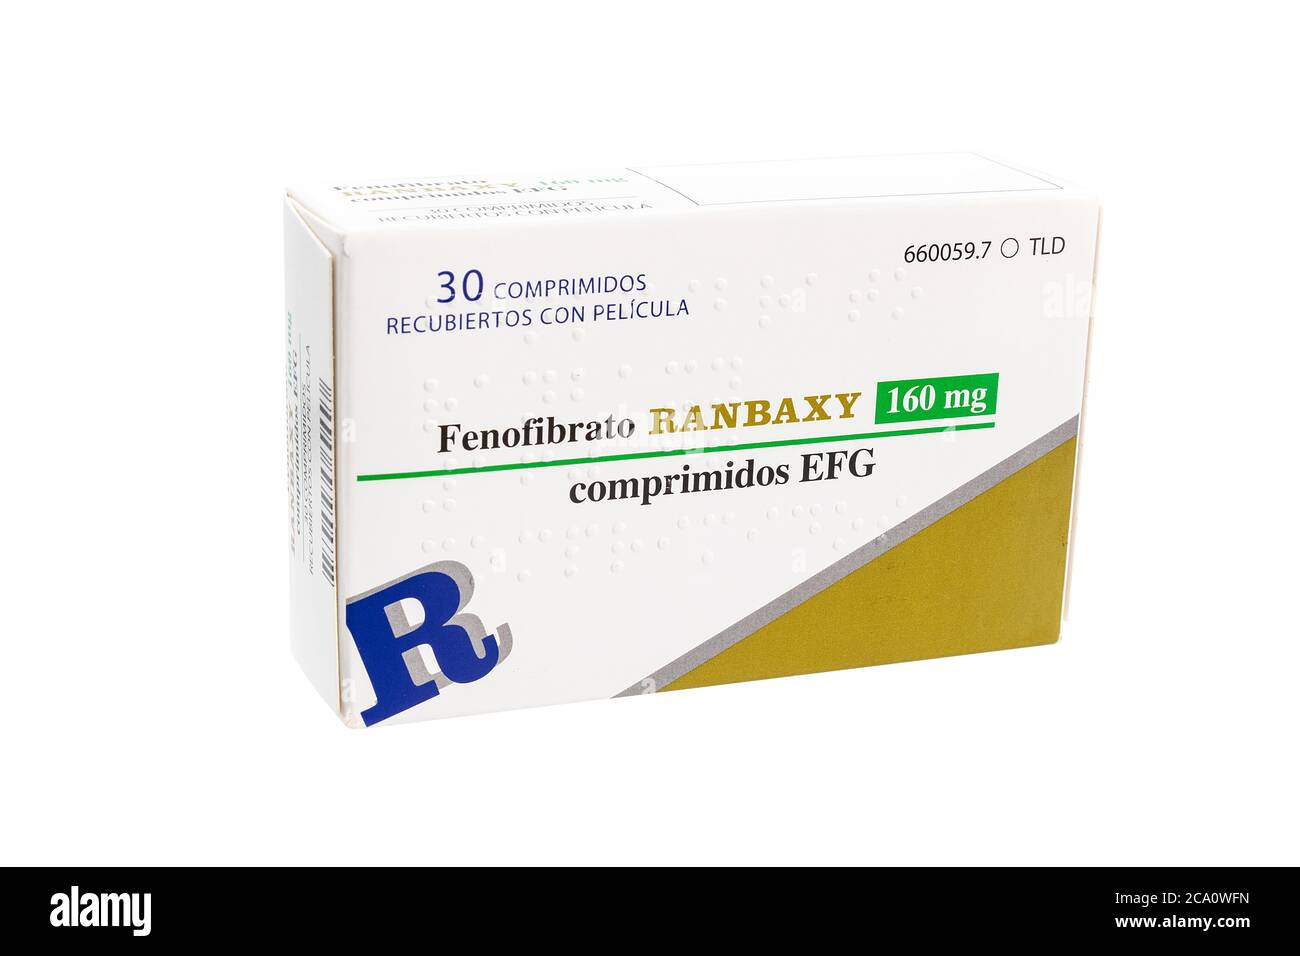 Huelva, Spanien - 23. Juli 2020: Spanish Box Fenofibrate Marke Randaxy, ist ein Medikament der Fibrate Klasse verwendet, um abnorme Blutfettwerte zu behandeln Stockfoto